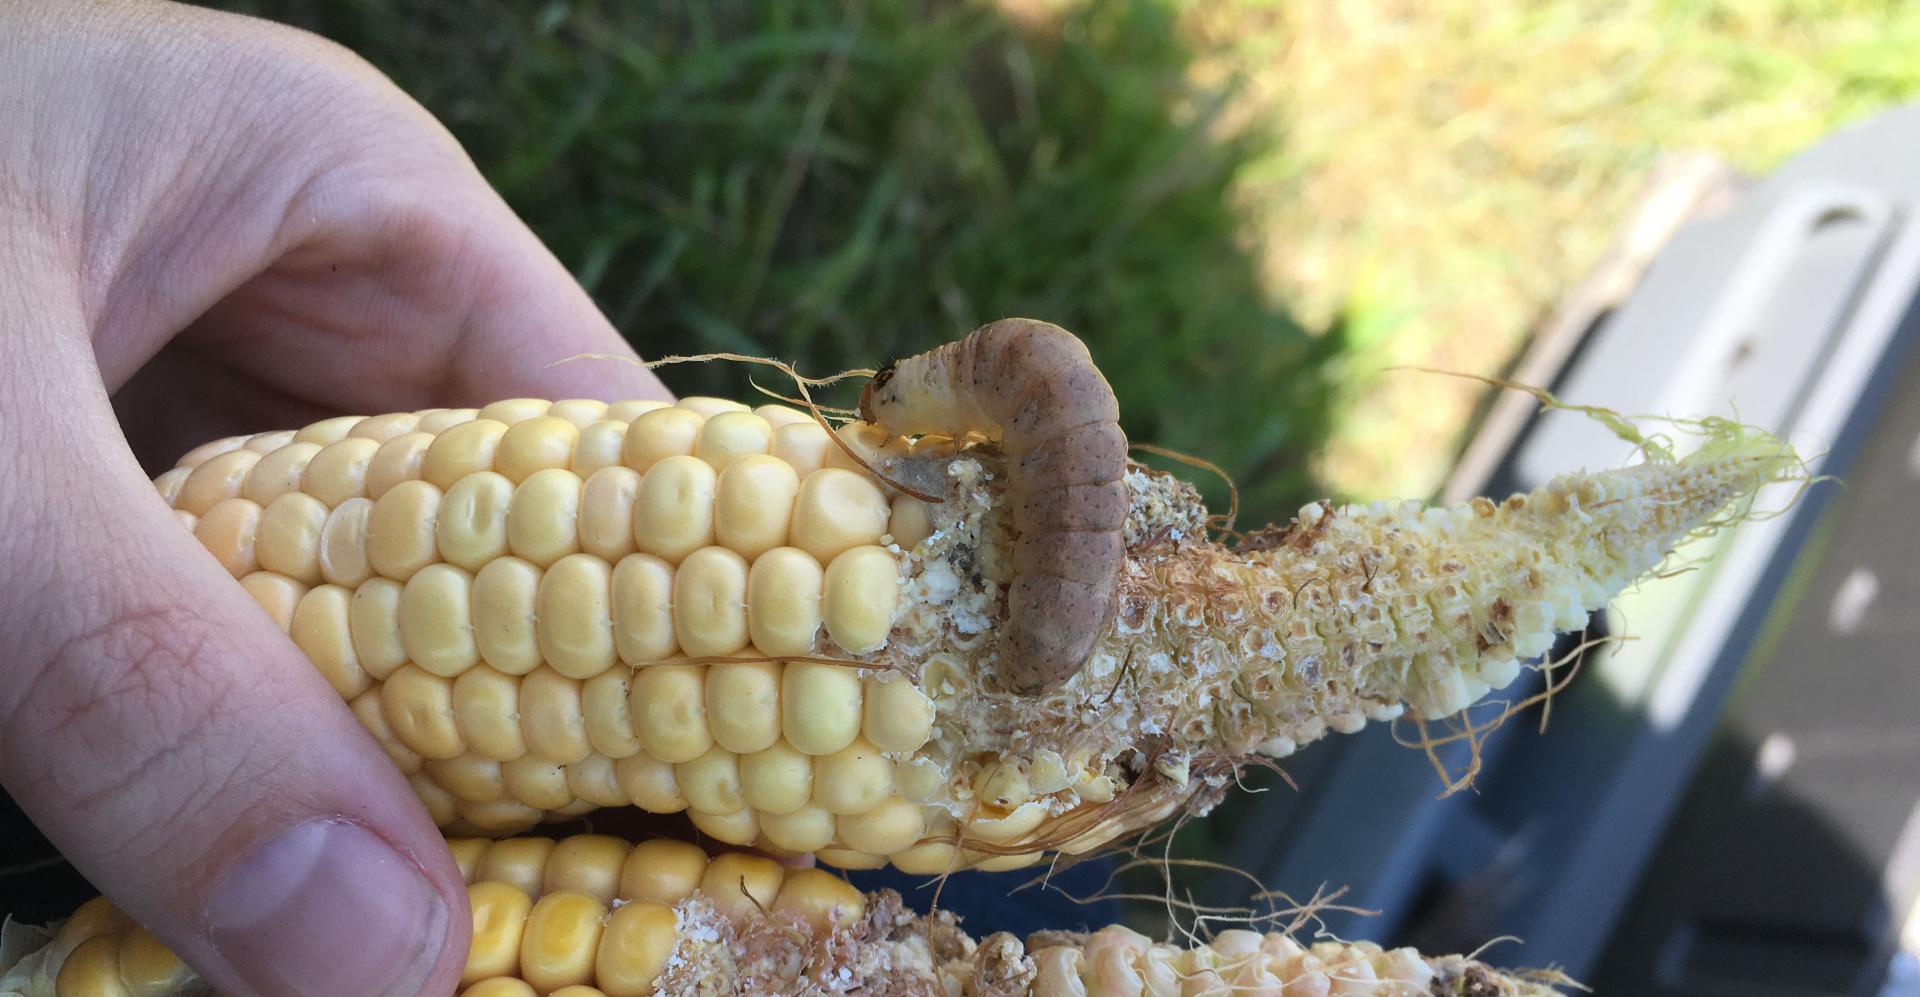 Western bean cutworm on an ear of corn in the field.